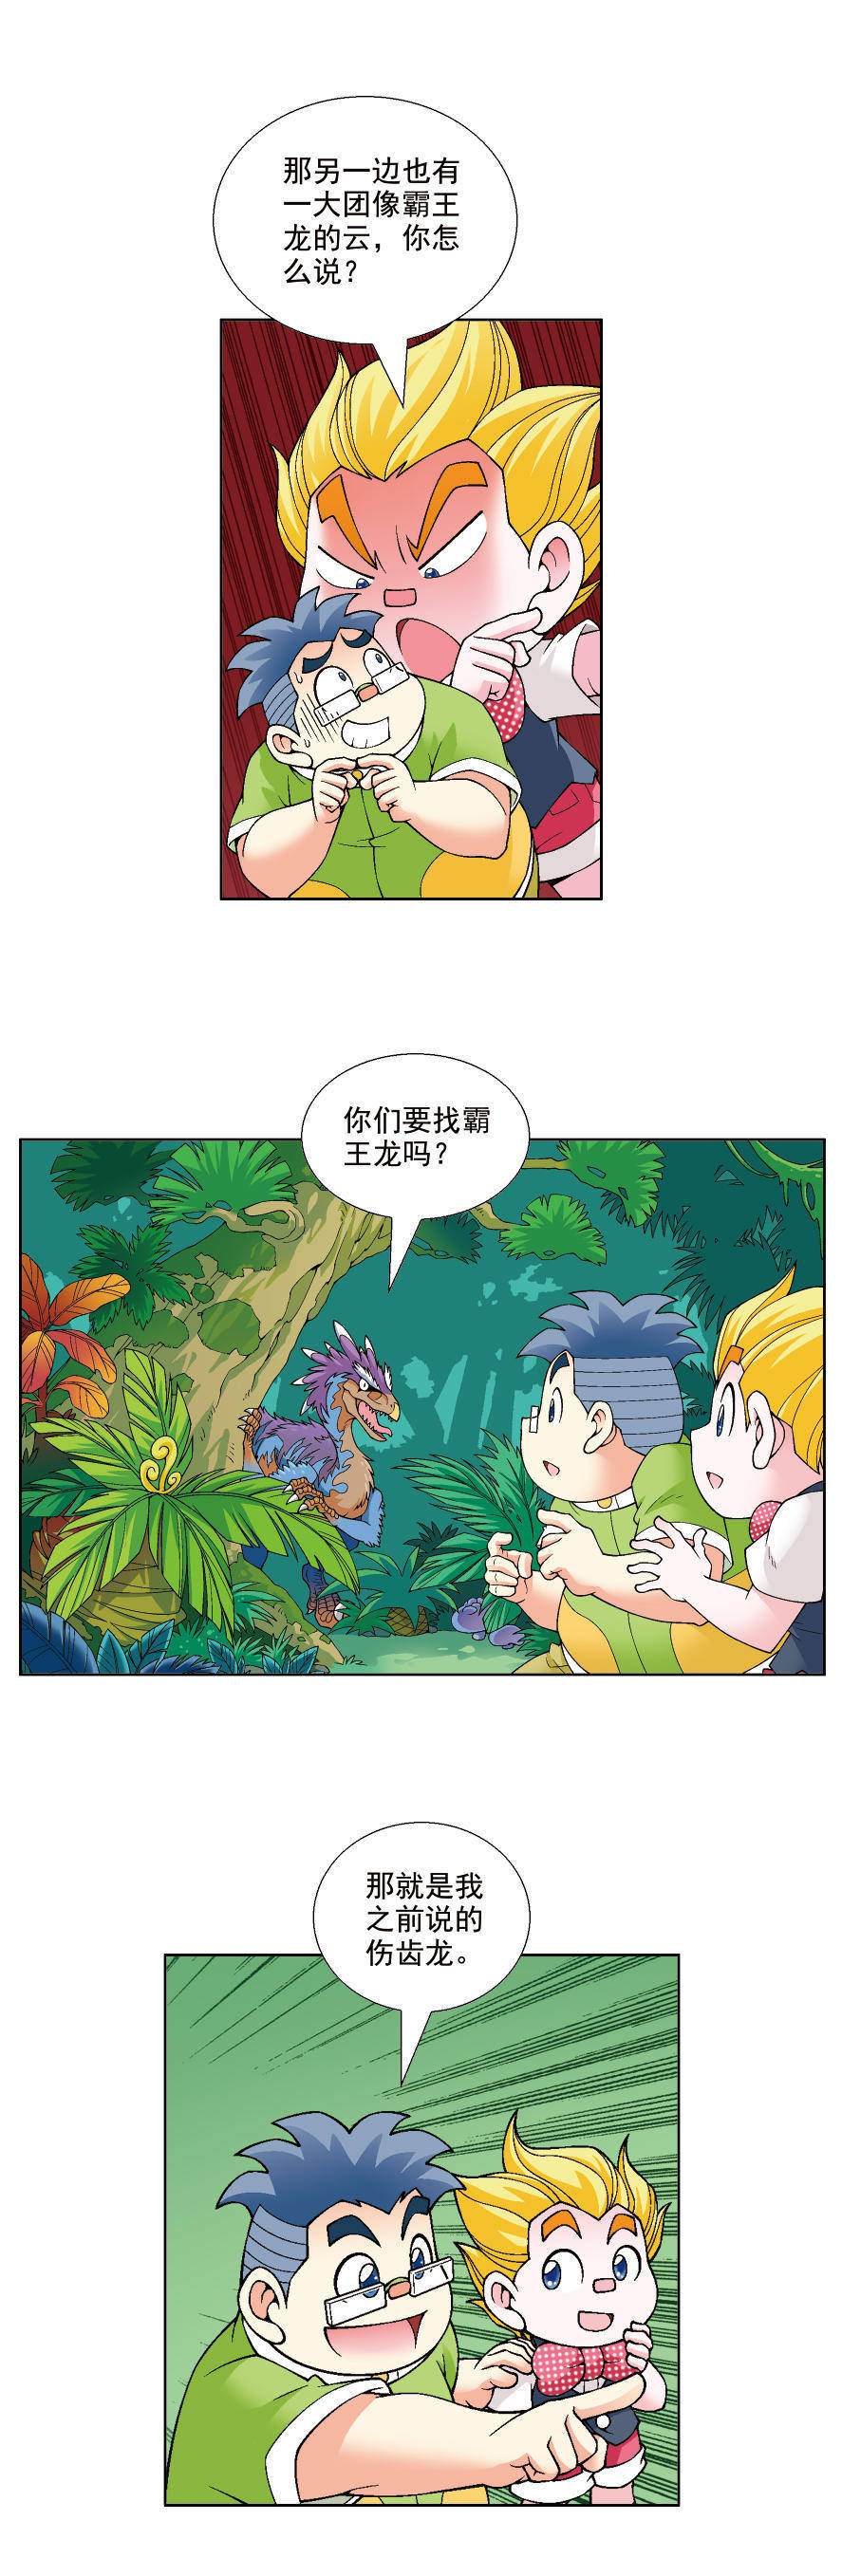 大中华寻宝记漫画连载恐龙世界寻宝记三vol6